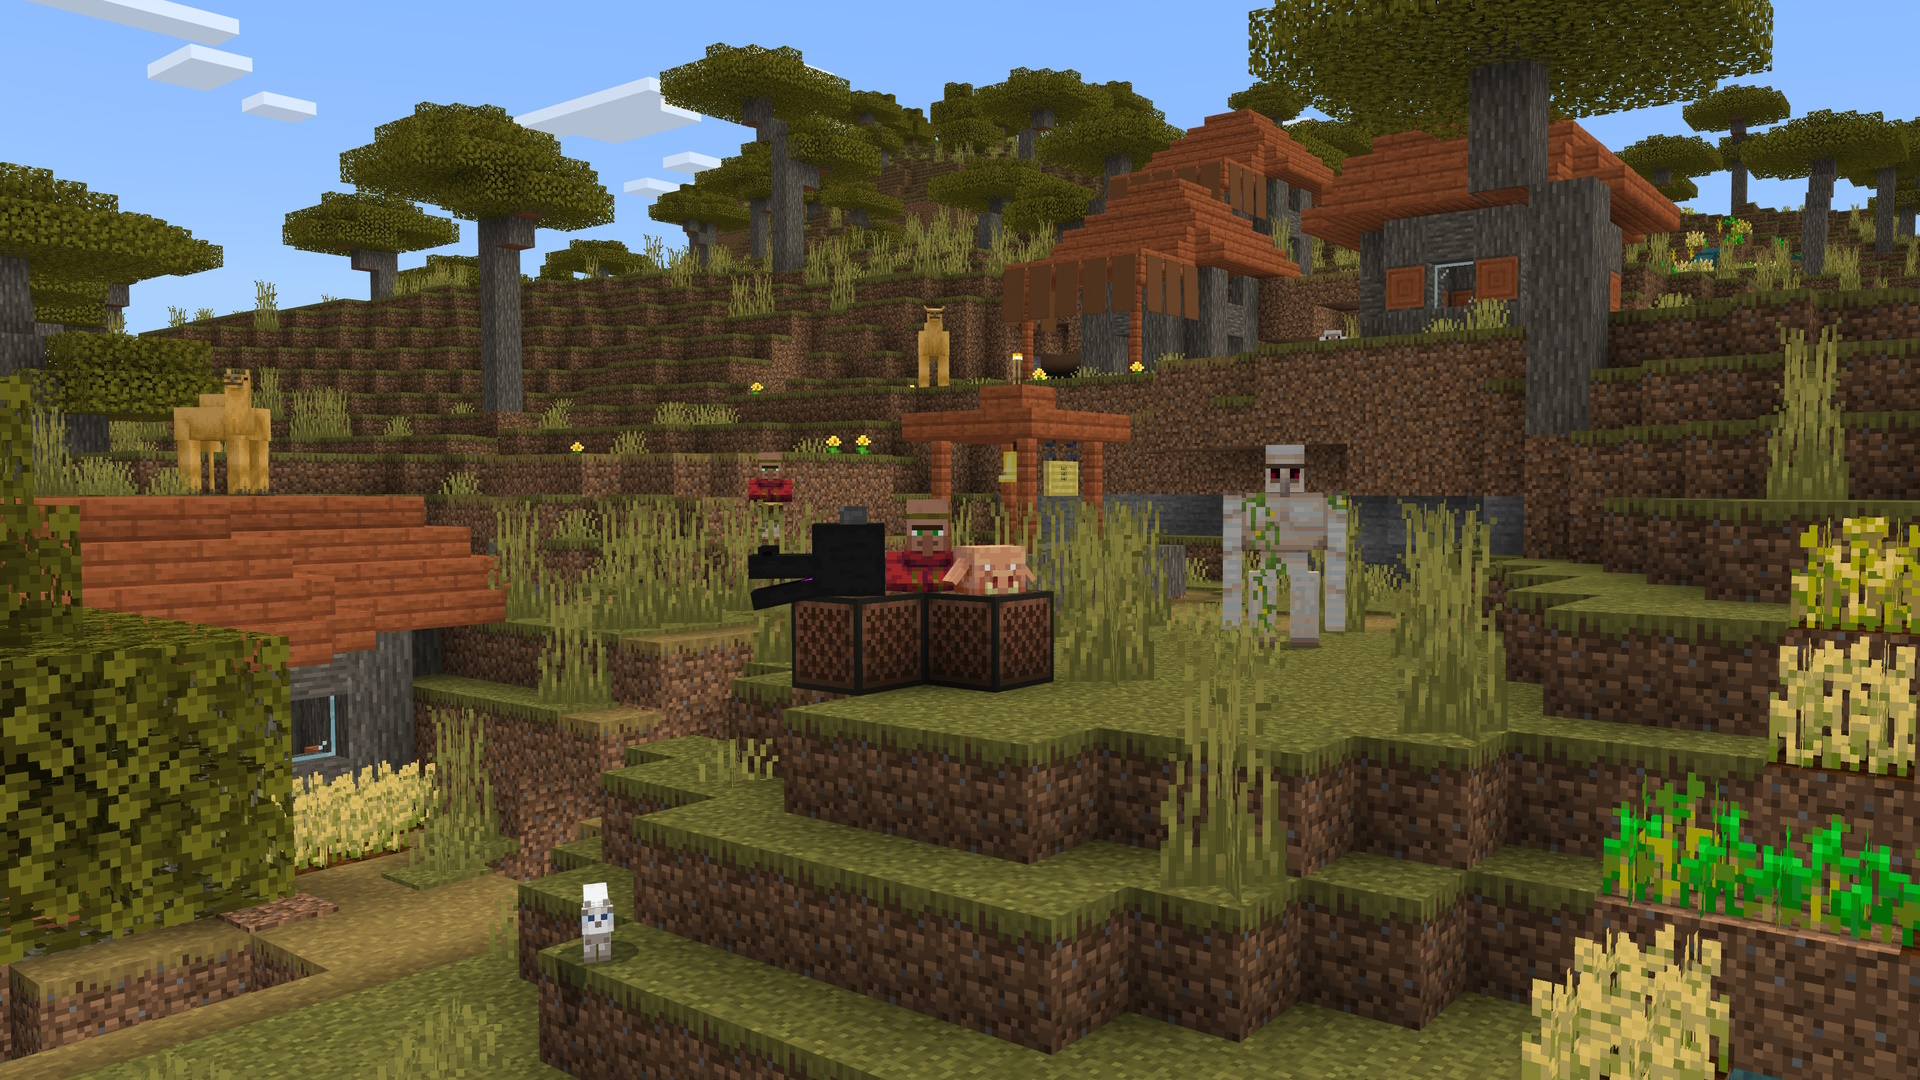 لقطة شاشة من Minecraft لقرية ، تظهر قرويًا يقف بجانب كتلتين مع تنين ورأس خنزير في الأعلى. هناك غولم حديدي وجملان وقطة في المشهد أيضًا. 